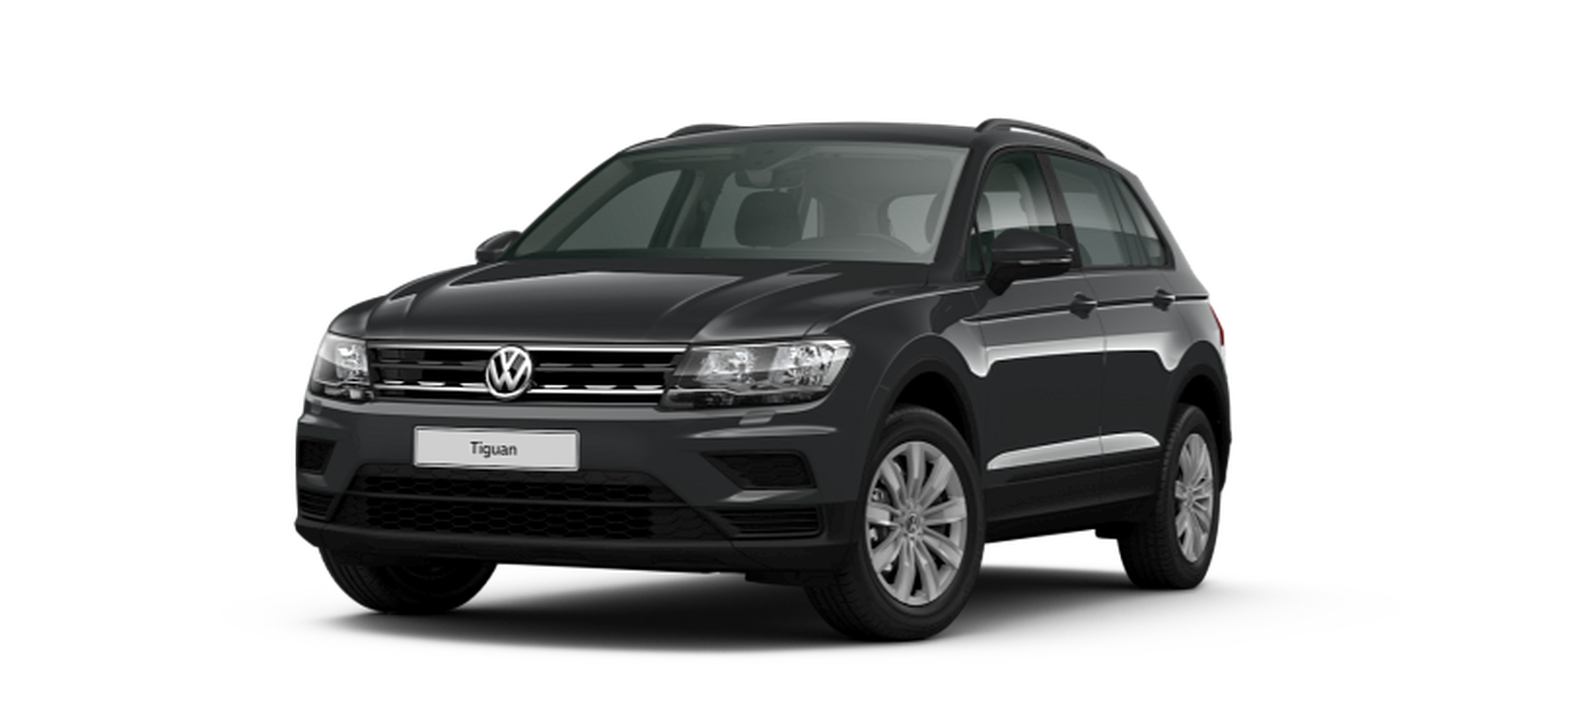 VW Tiguan gebraucht kaufen » Top-Angebote